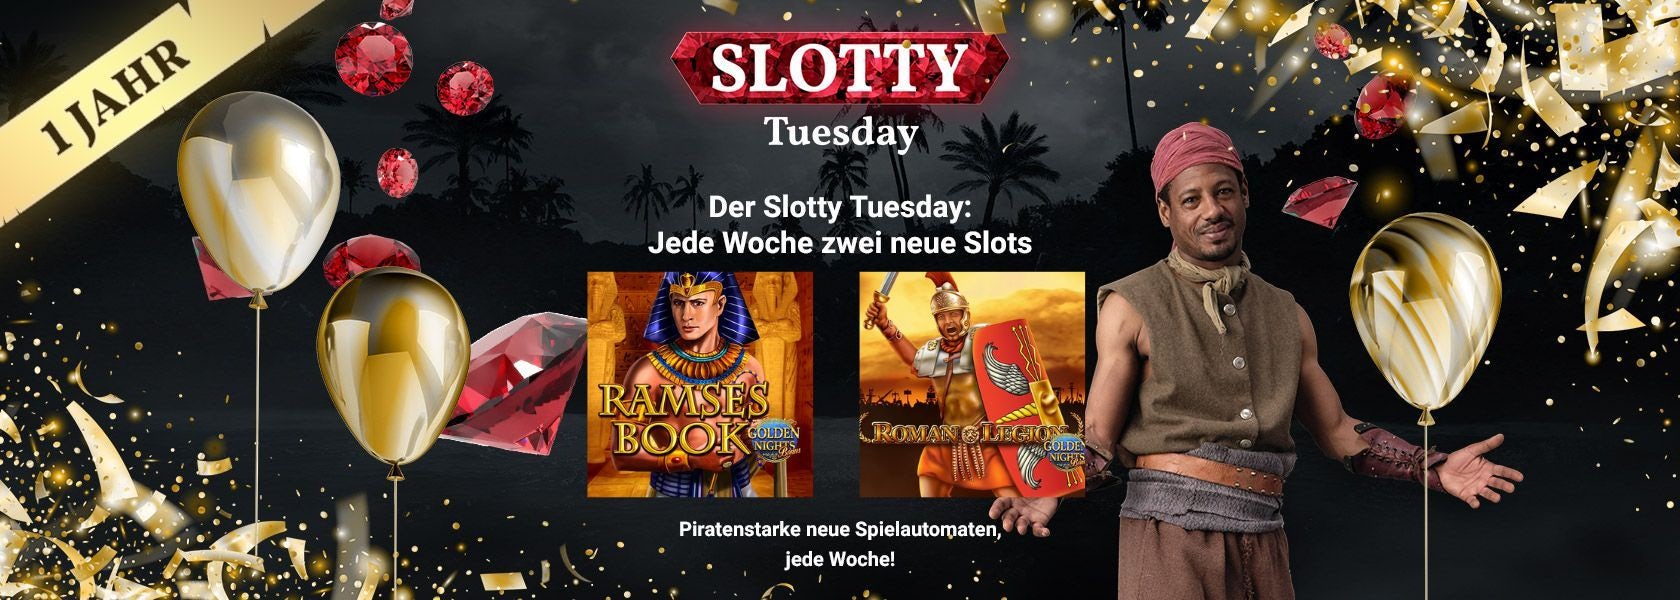 JPI-Header-Slotty-Tuesday-1306 (1)